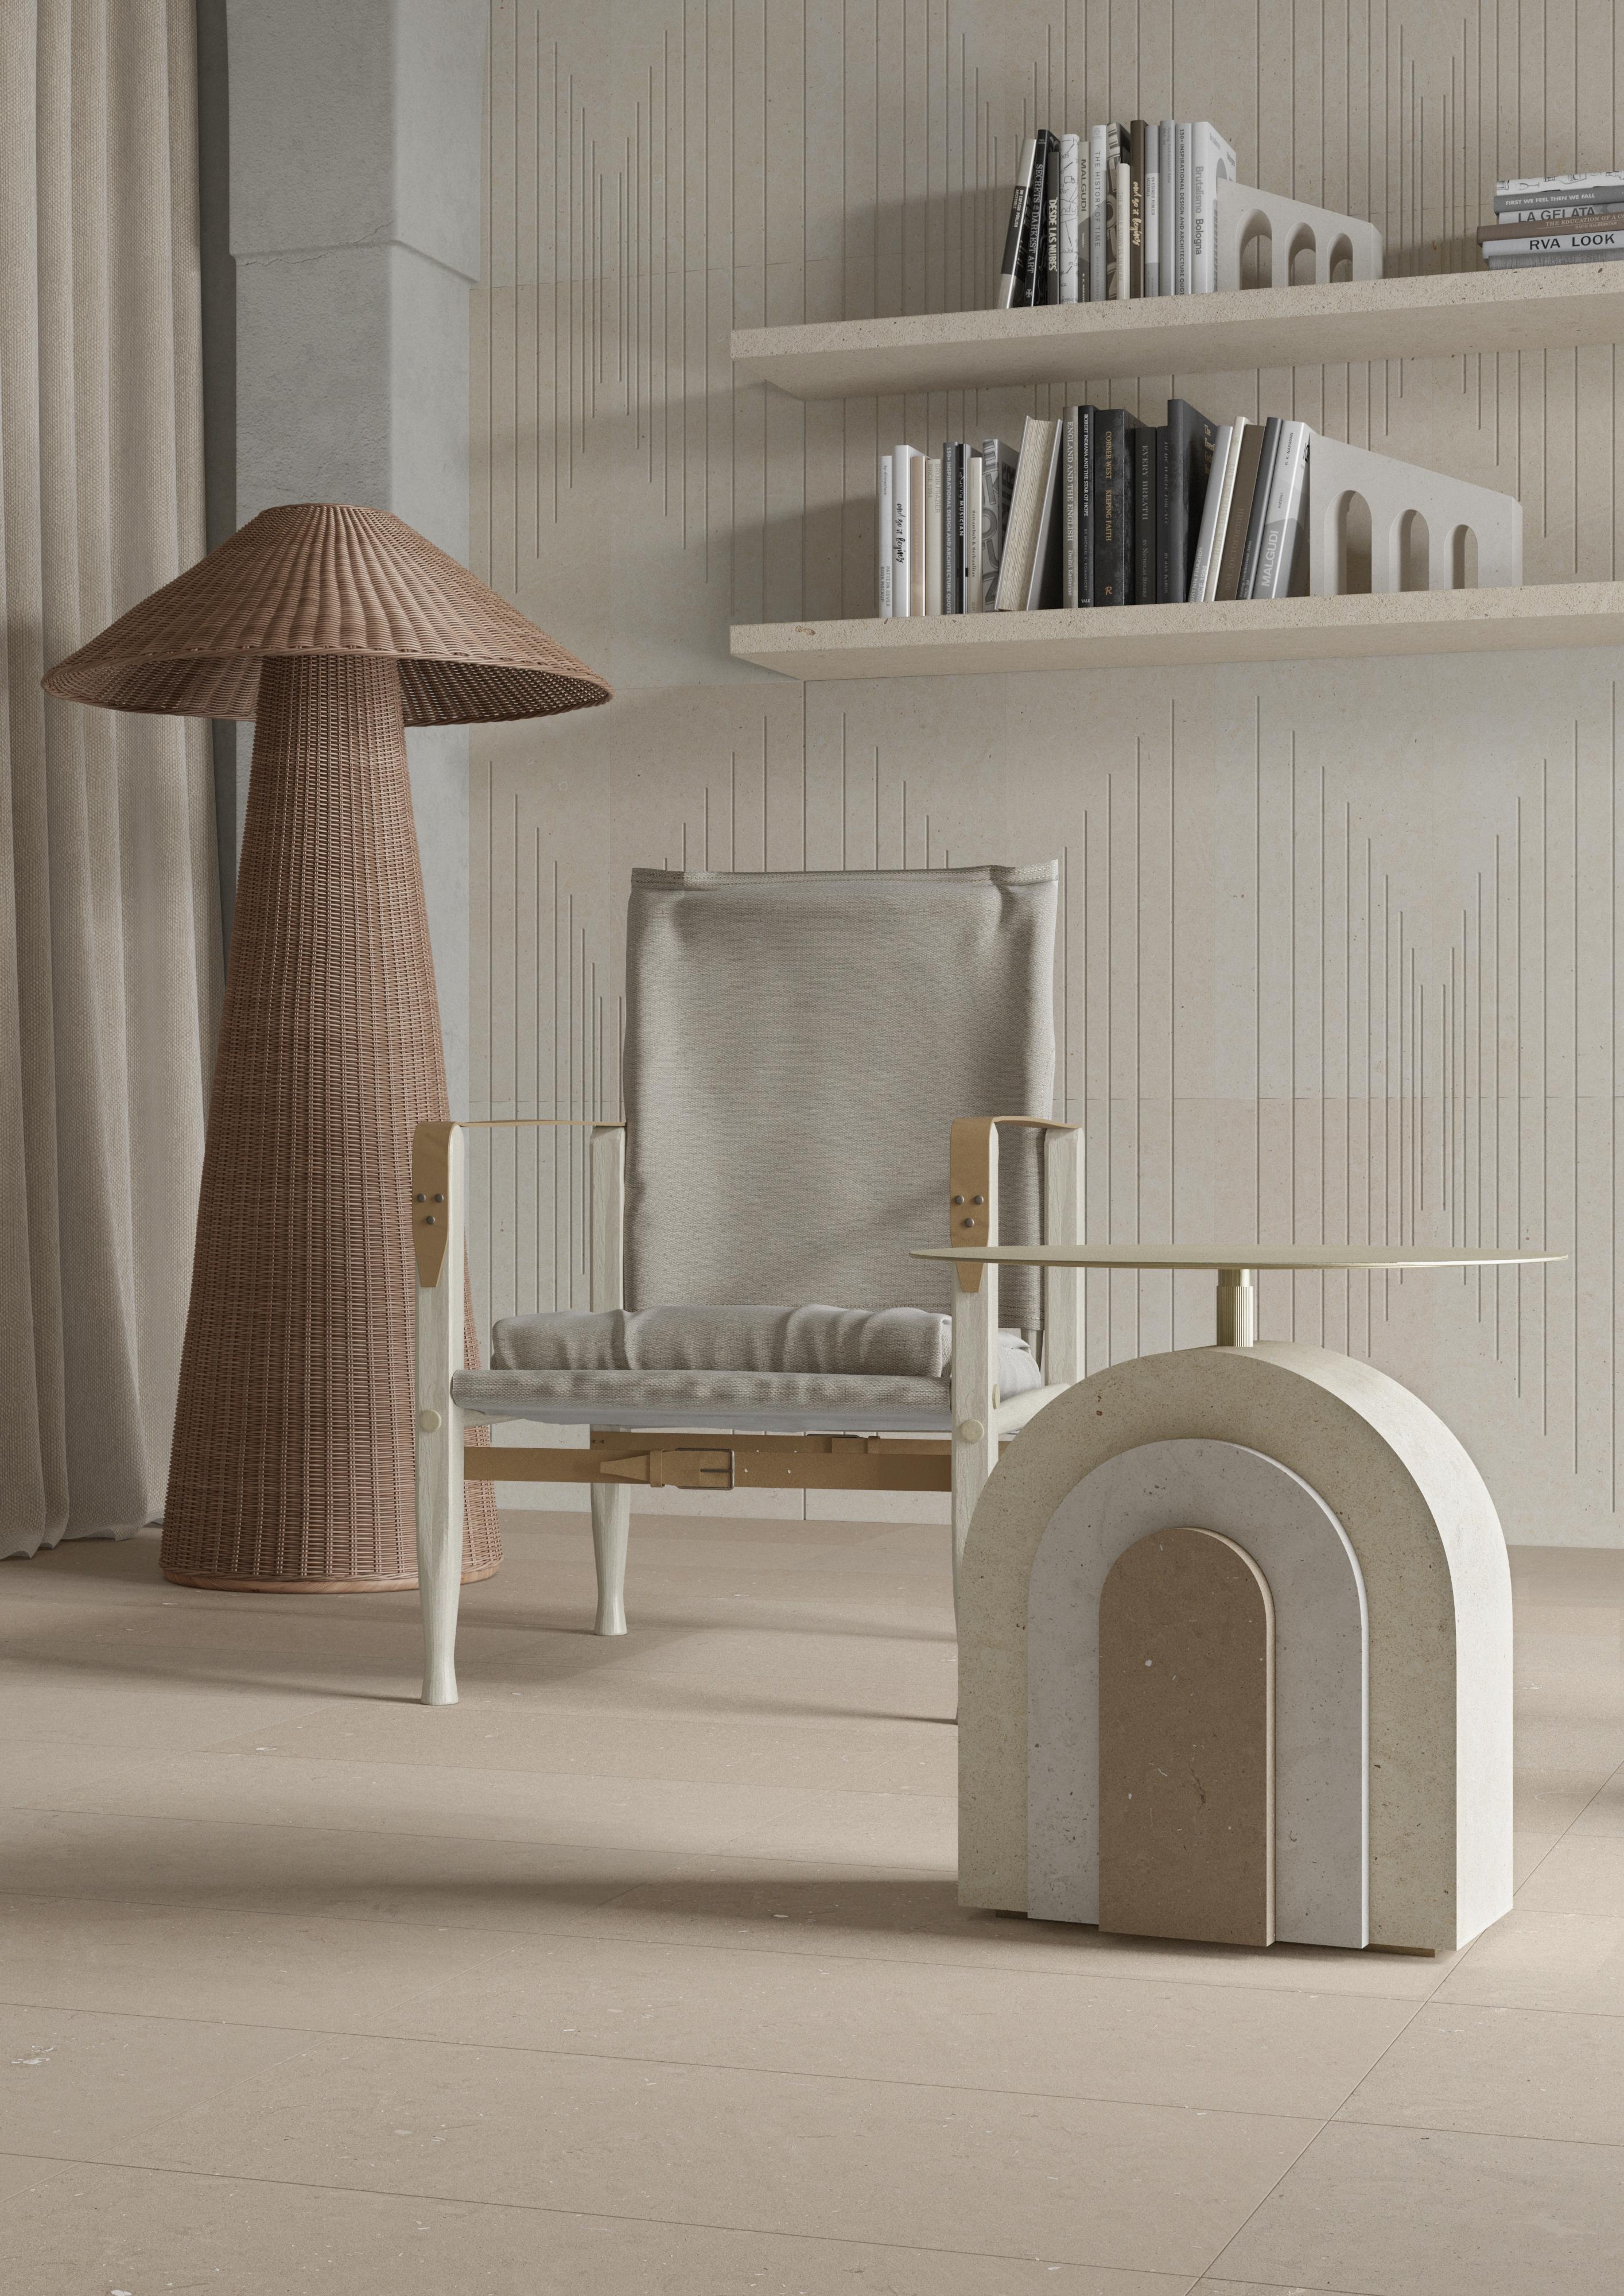 Arco est une table basse au design géométrique rigoureux qui fait référence à l'architecture. Un dialogue entre les matériaux, le métal et la pierre de Pimar, dans une séquence de couches, dans différentes nuances de beige, de blanc et de gris.